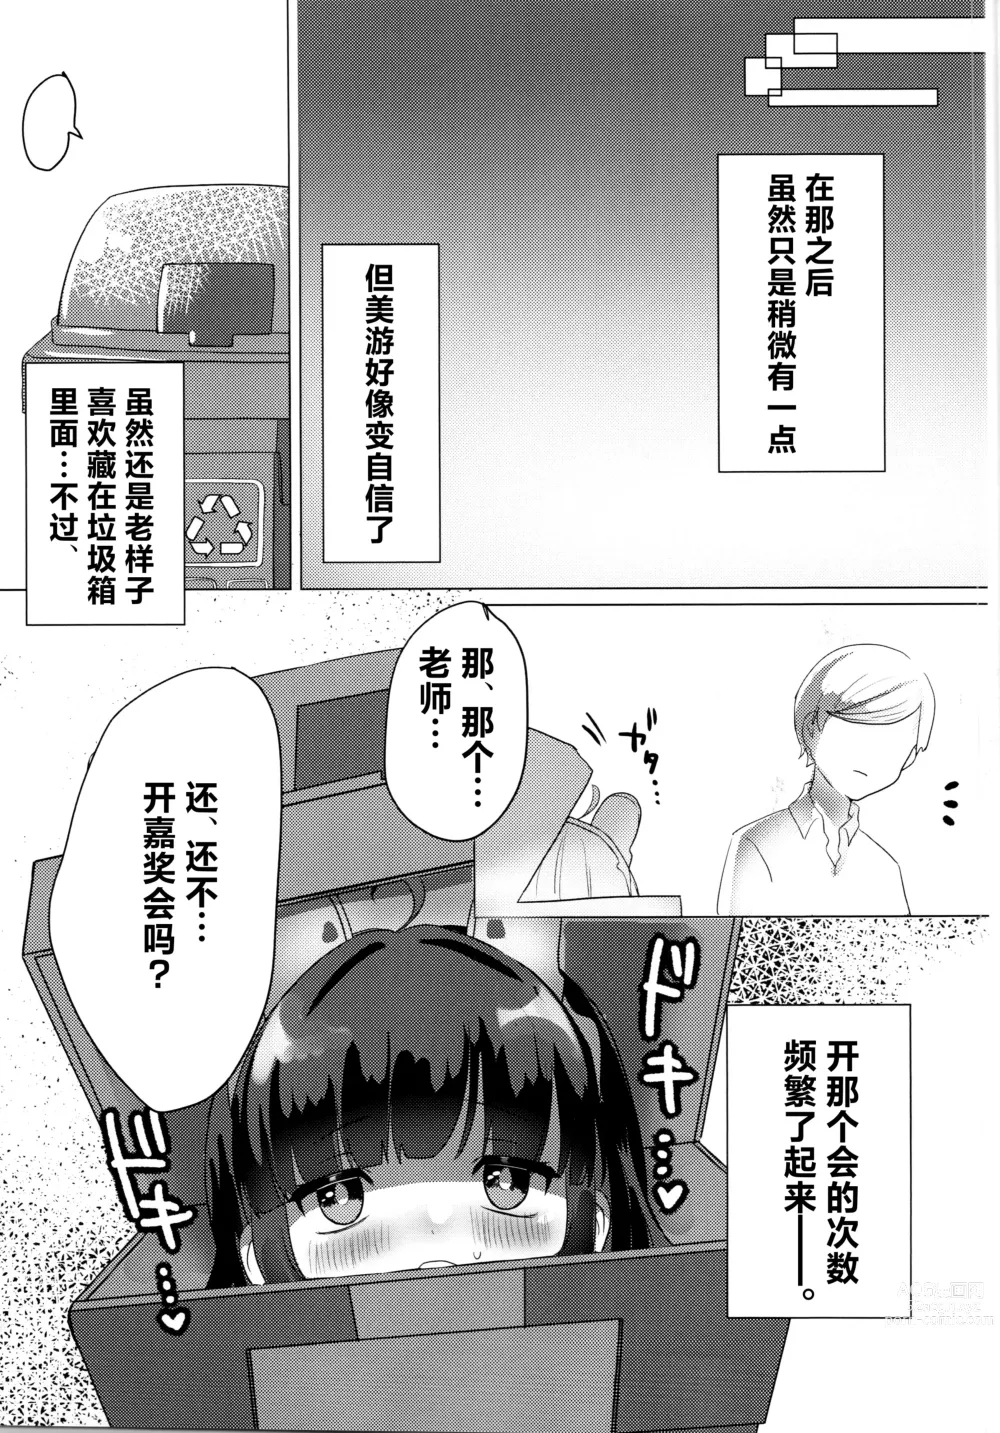 Page 22 of doujinshi Kasumizawa Miyu o Amayakashitai!